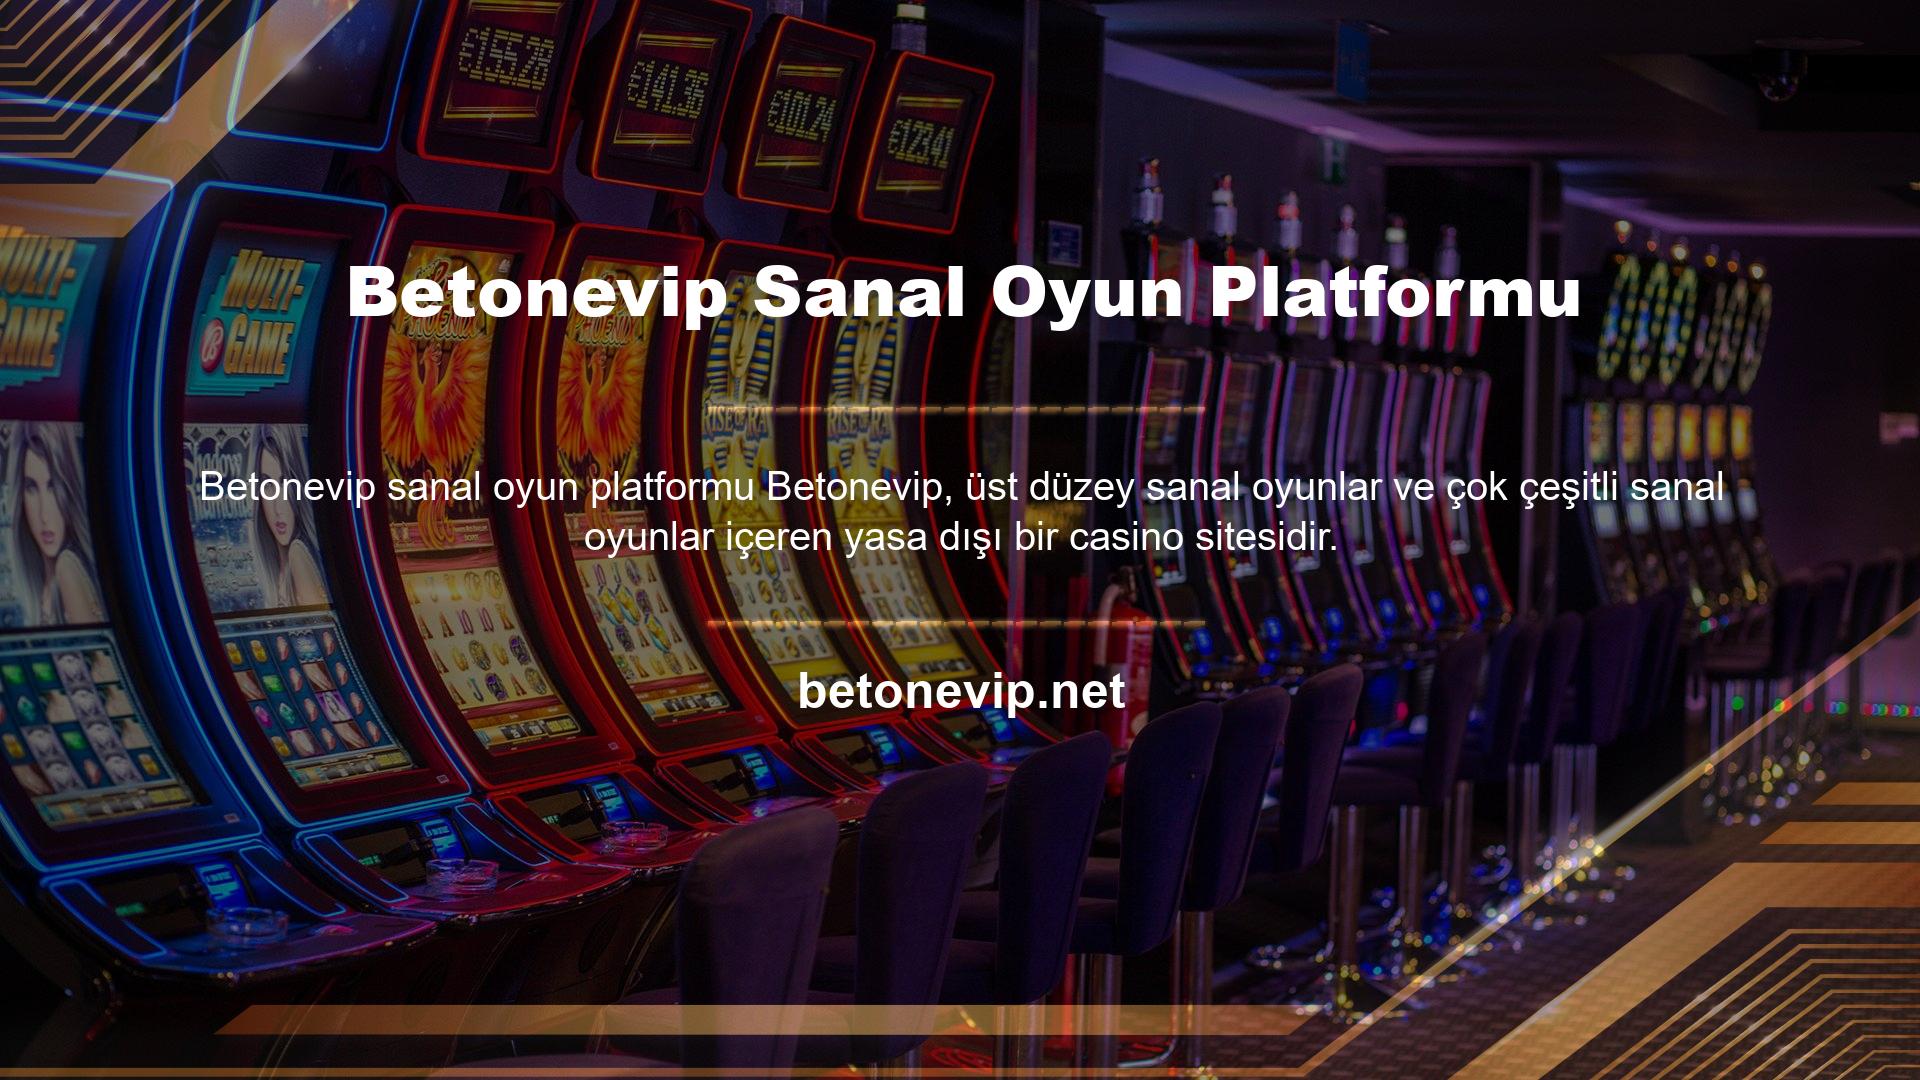 Ayrıca, çeşitli sanal oyunlar ve onlarca oyun içeren canlı bir casino sunmaktadır